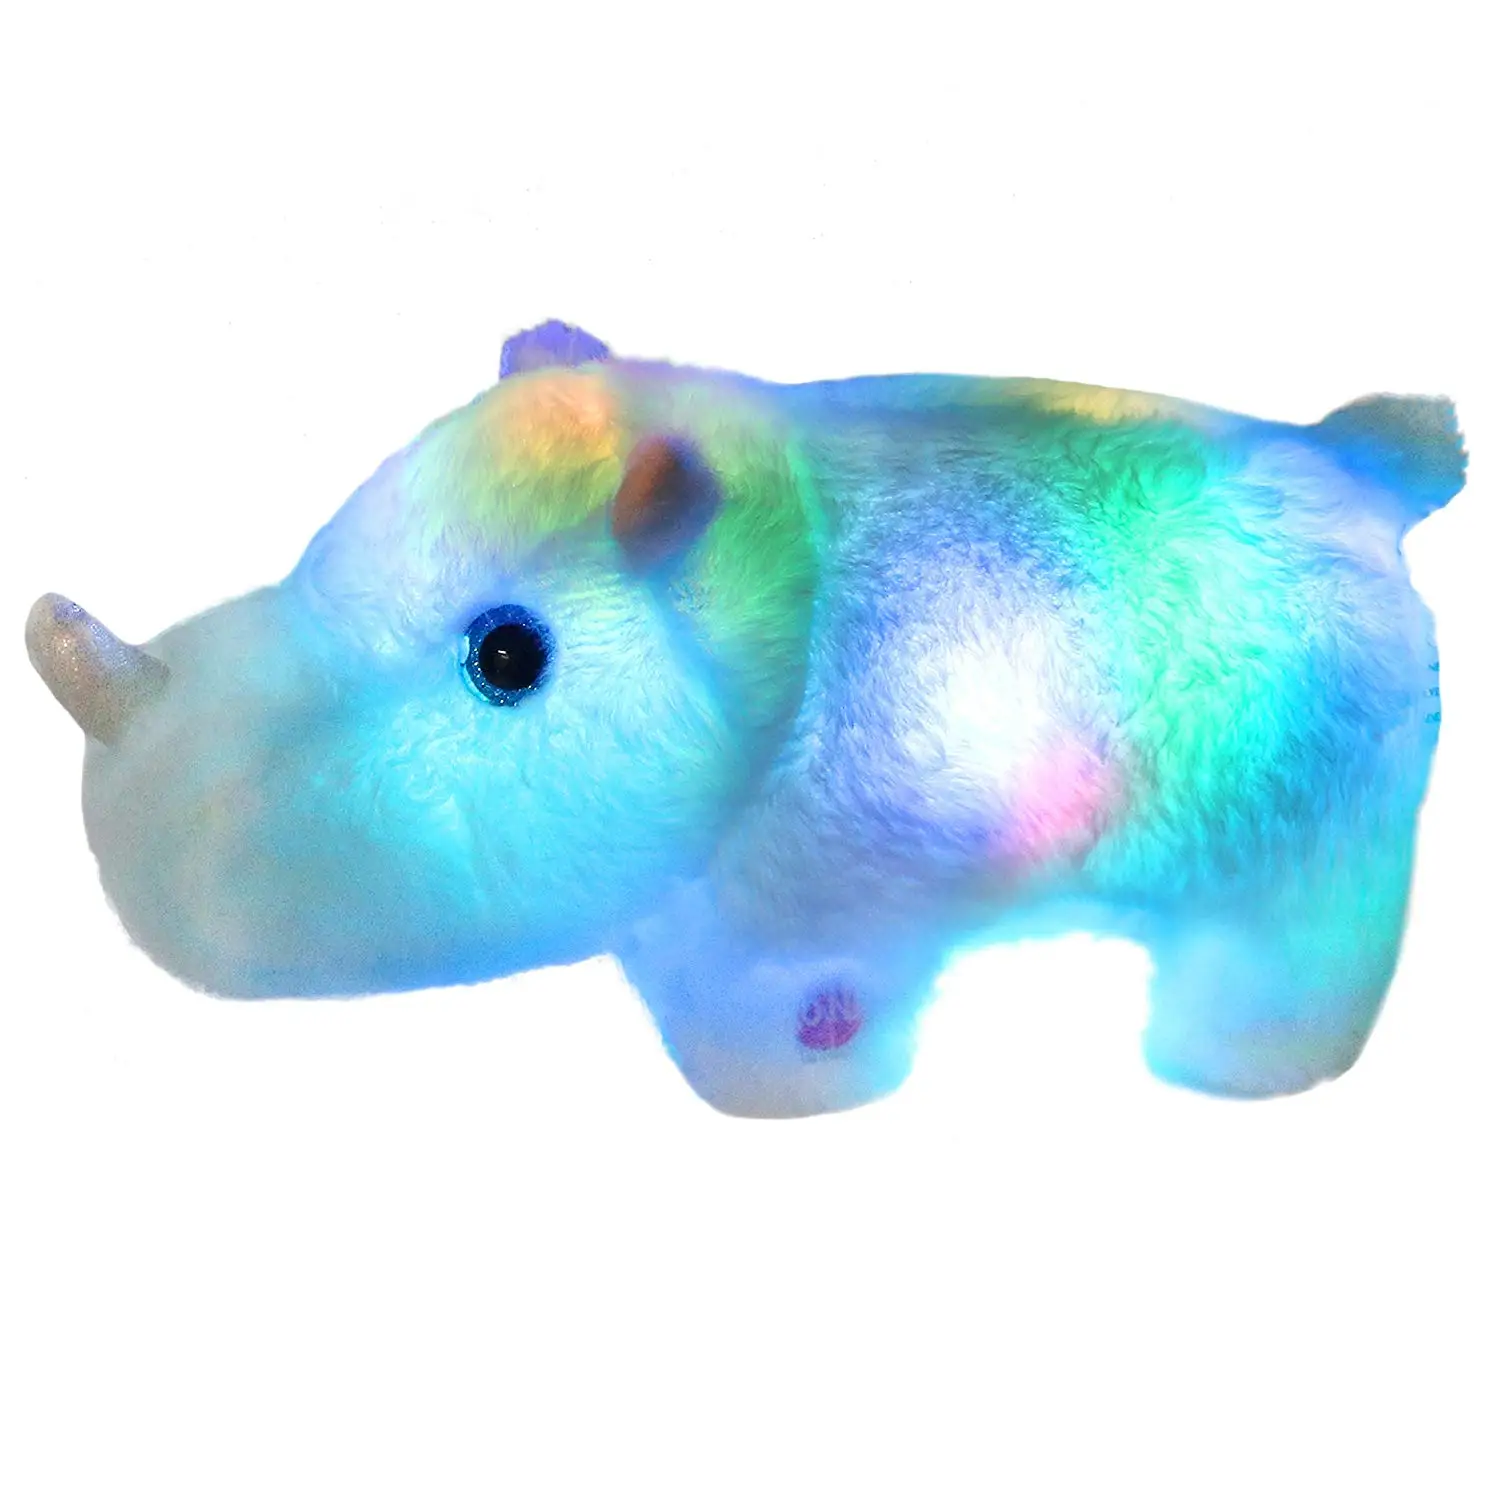 rhino stuffed animal